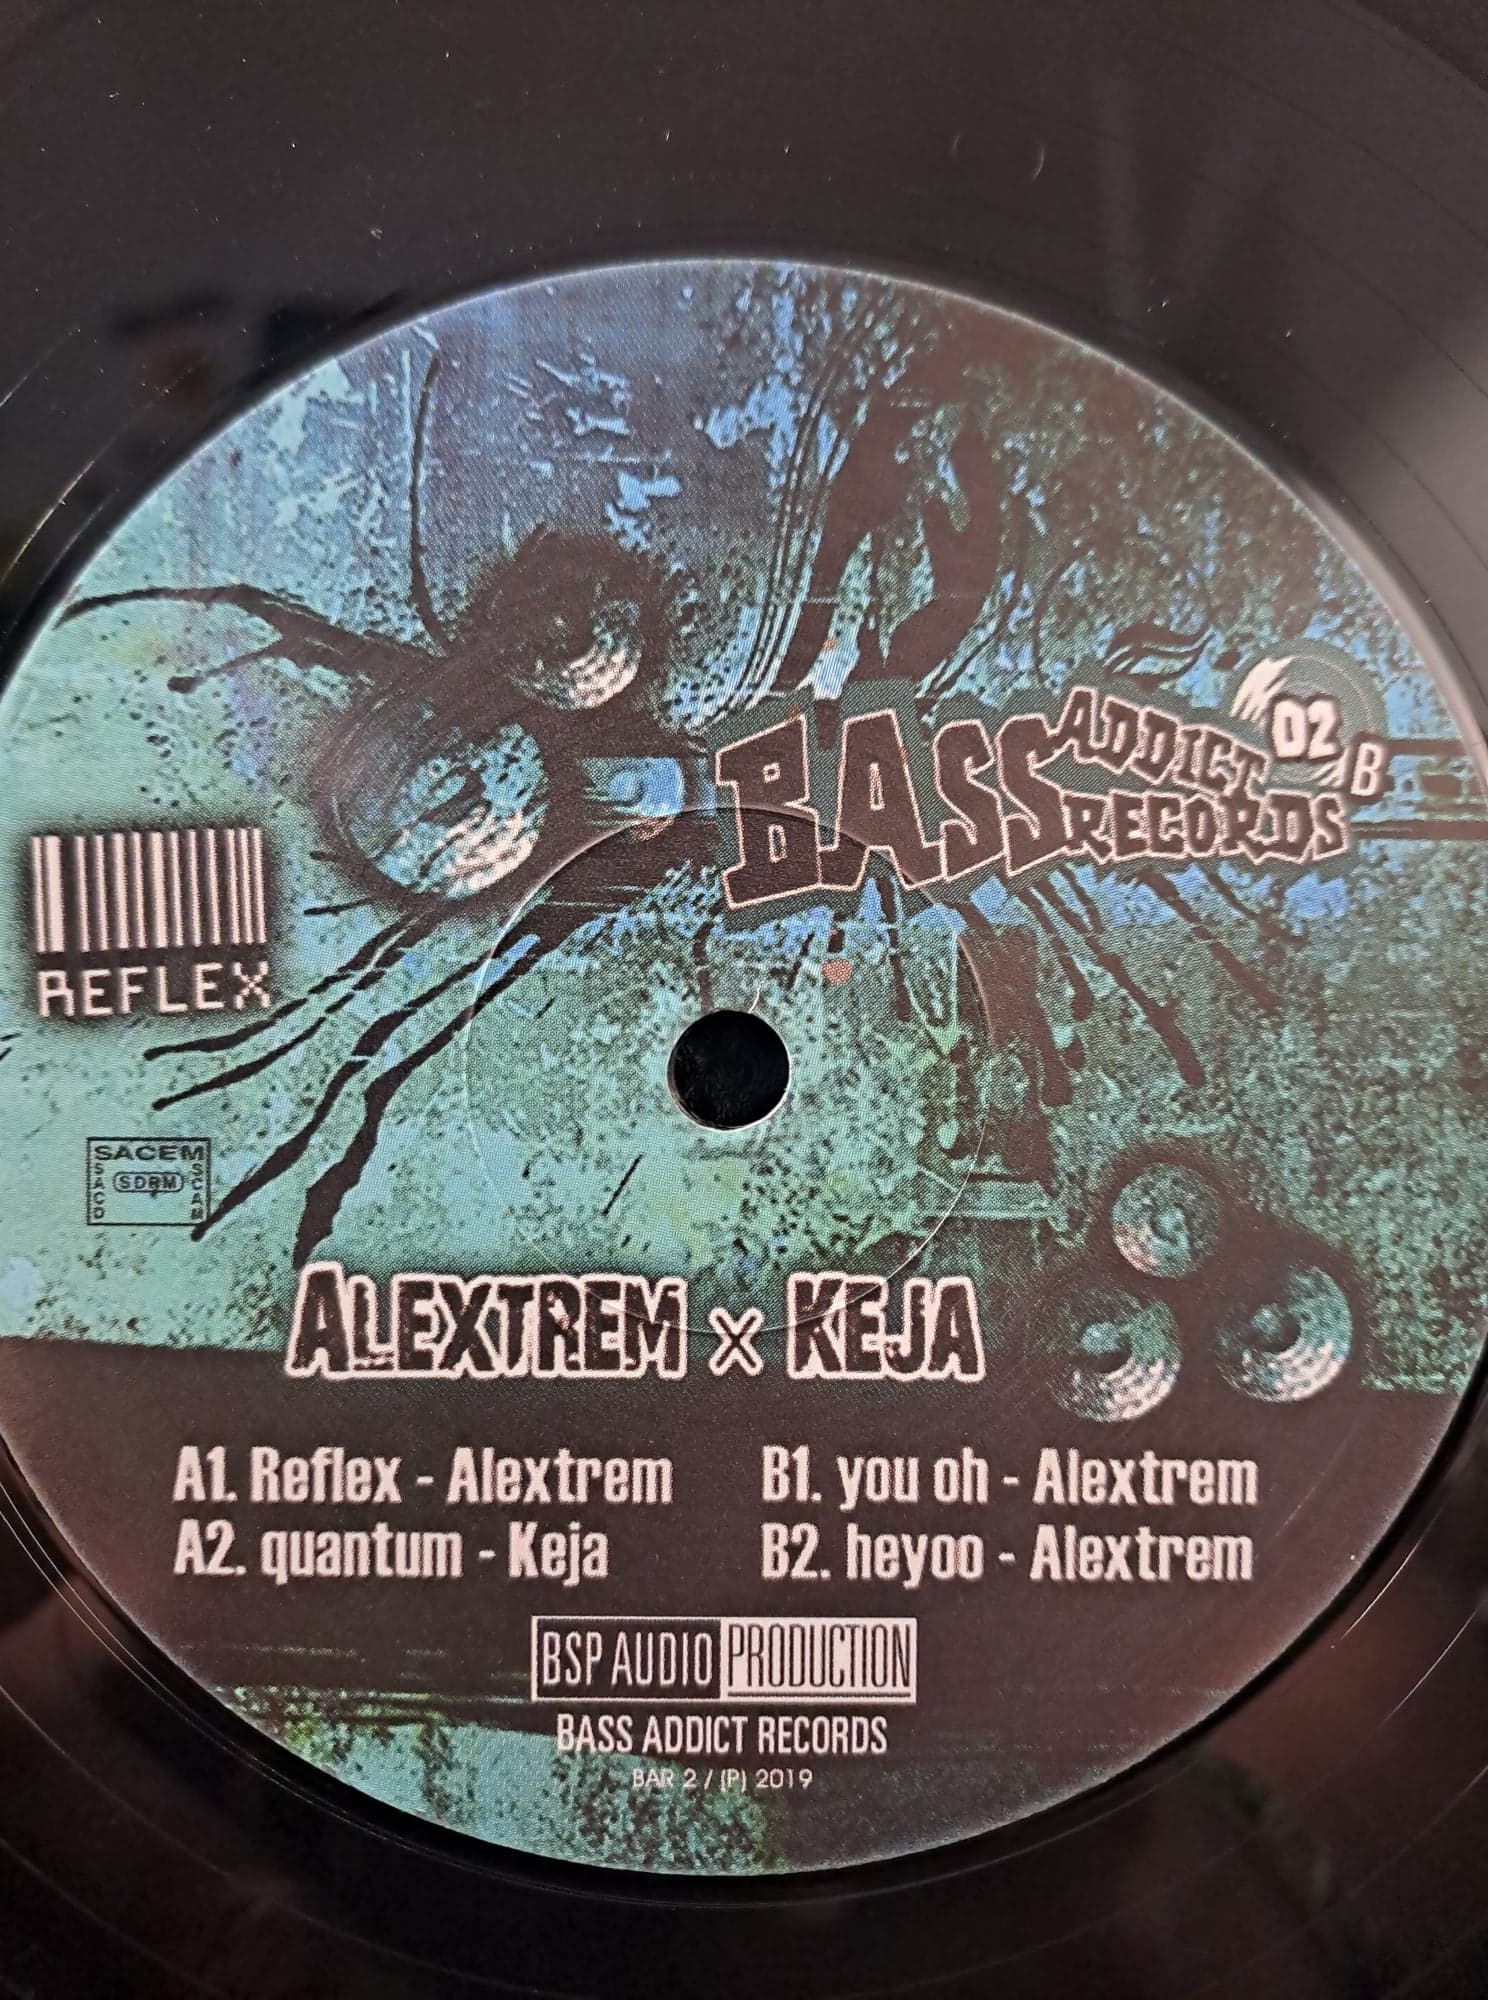 Bass Addict 02 - vinyle freetekno